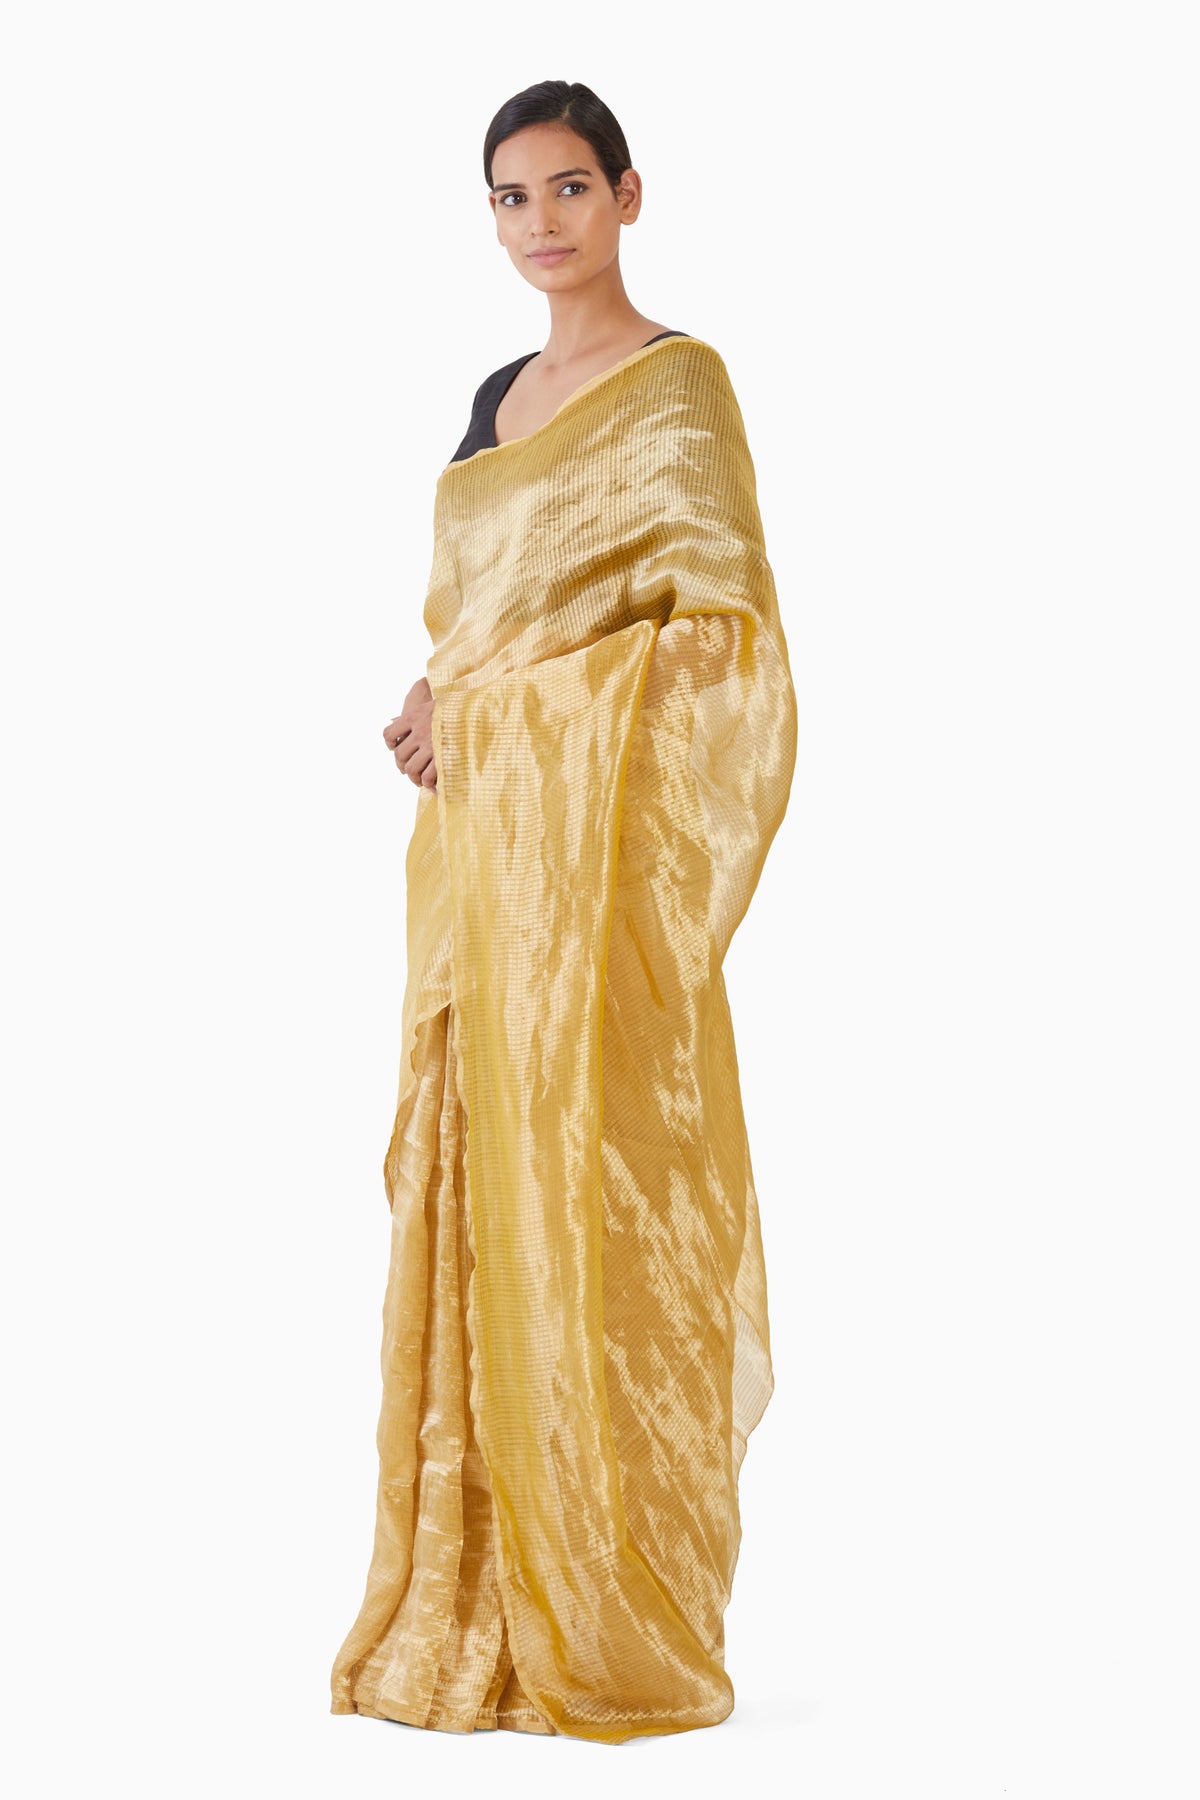 Textured yellow metallic saree